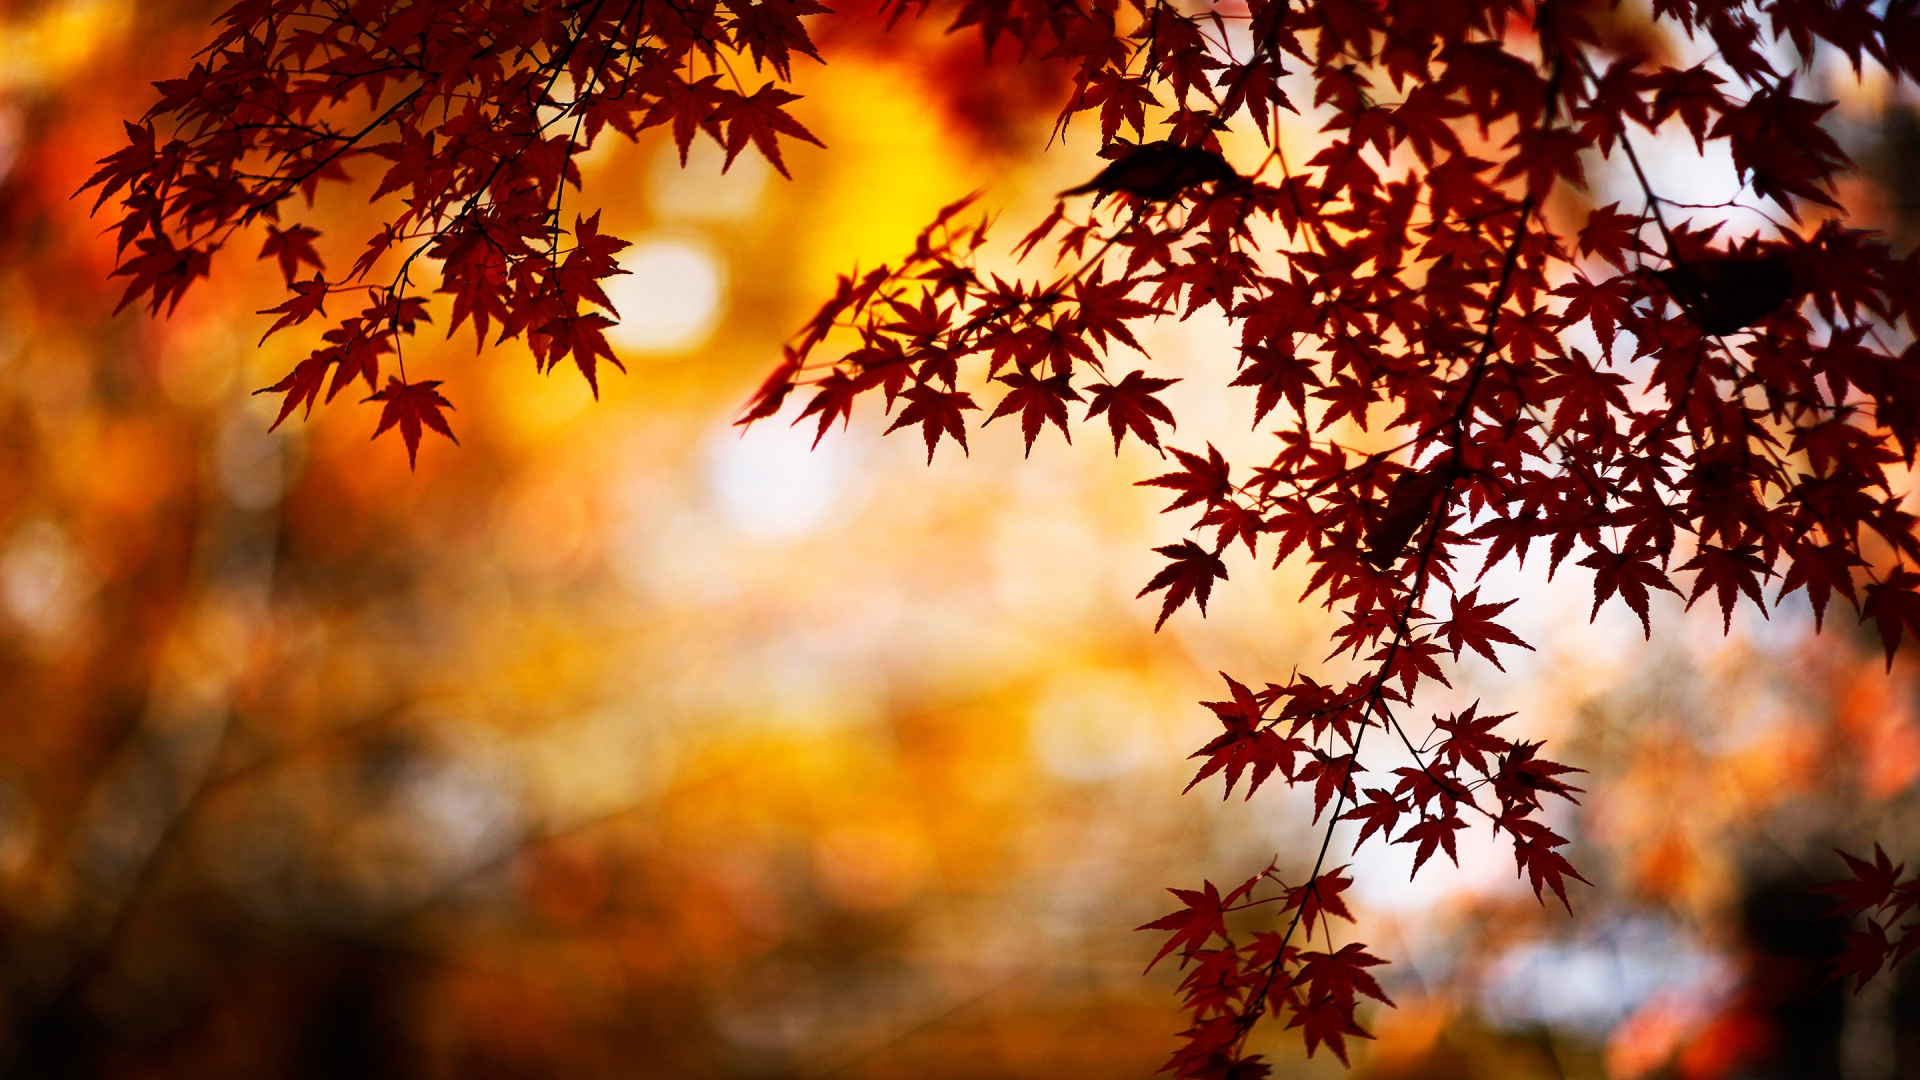 HD Fall Leaves Wallpaper - WallpaperSafari